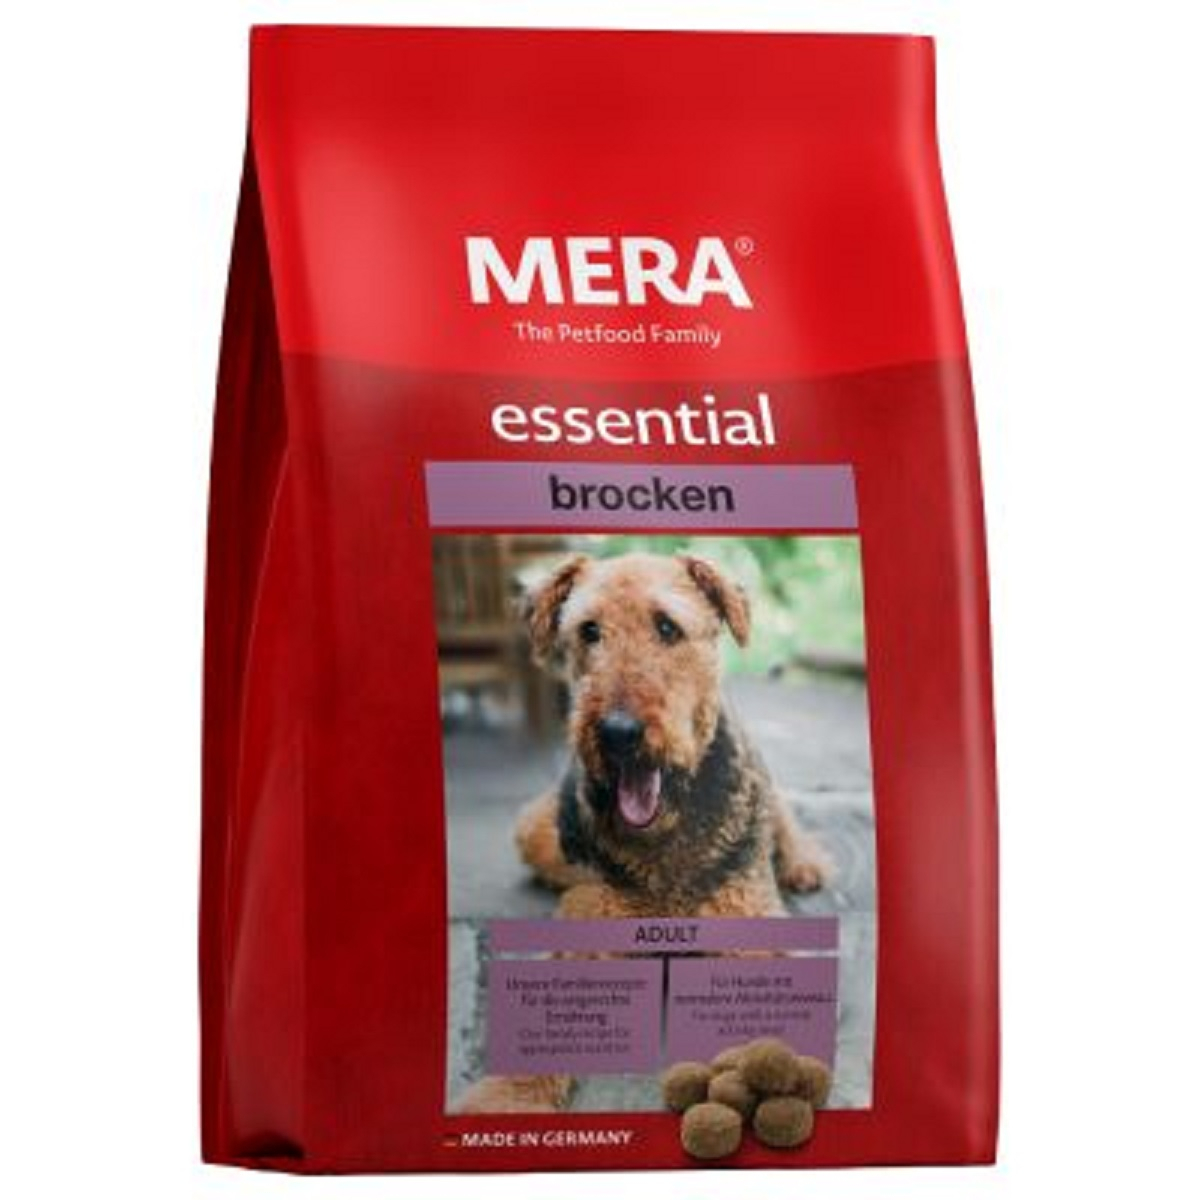 MERA Essential al pollame per cane adulto di taglia media e grande con problemi cutanei